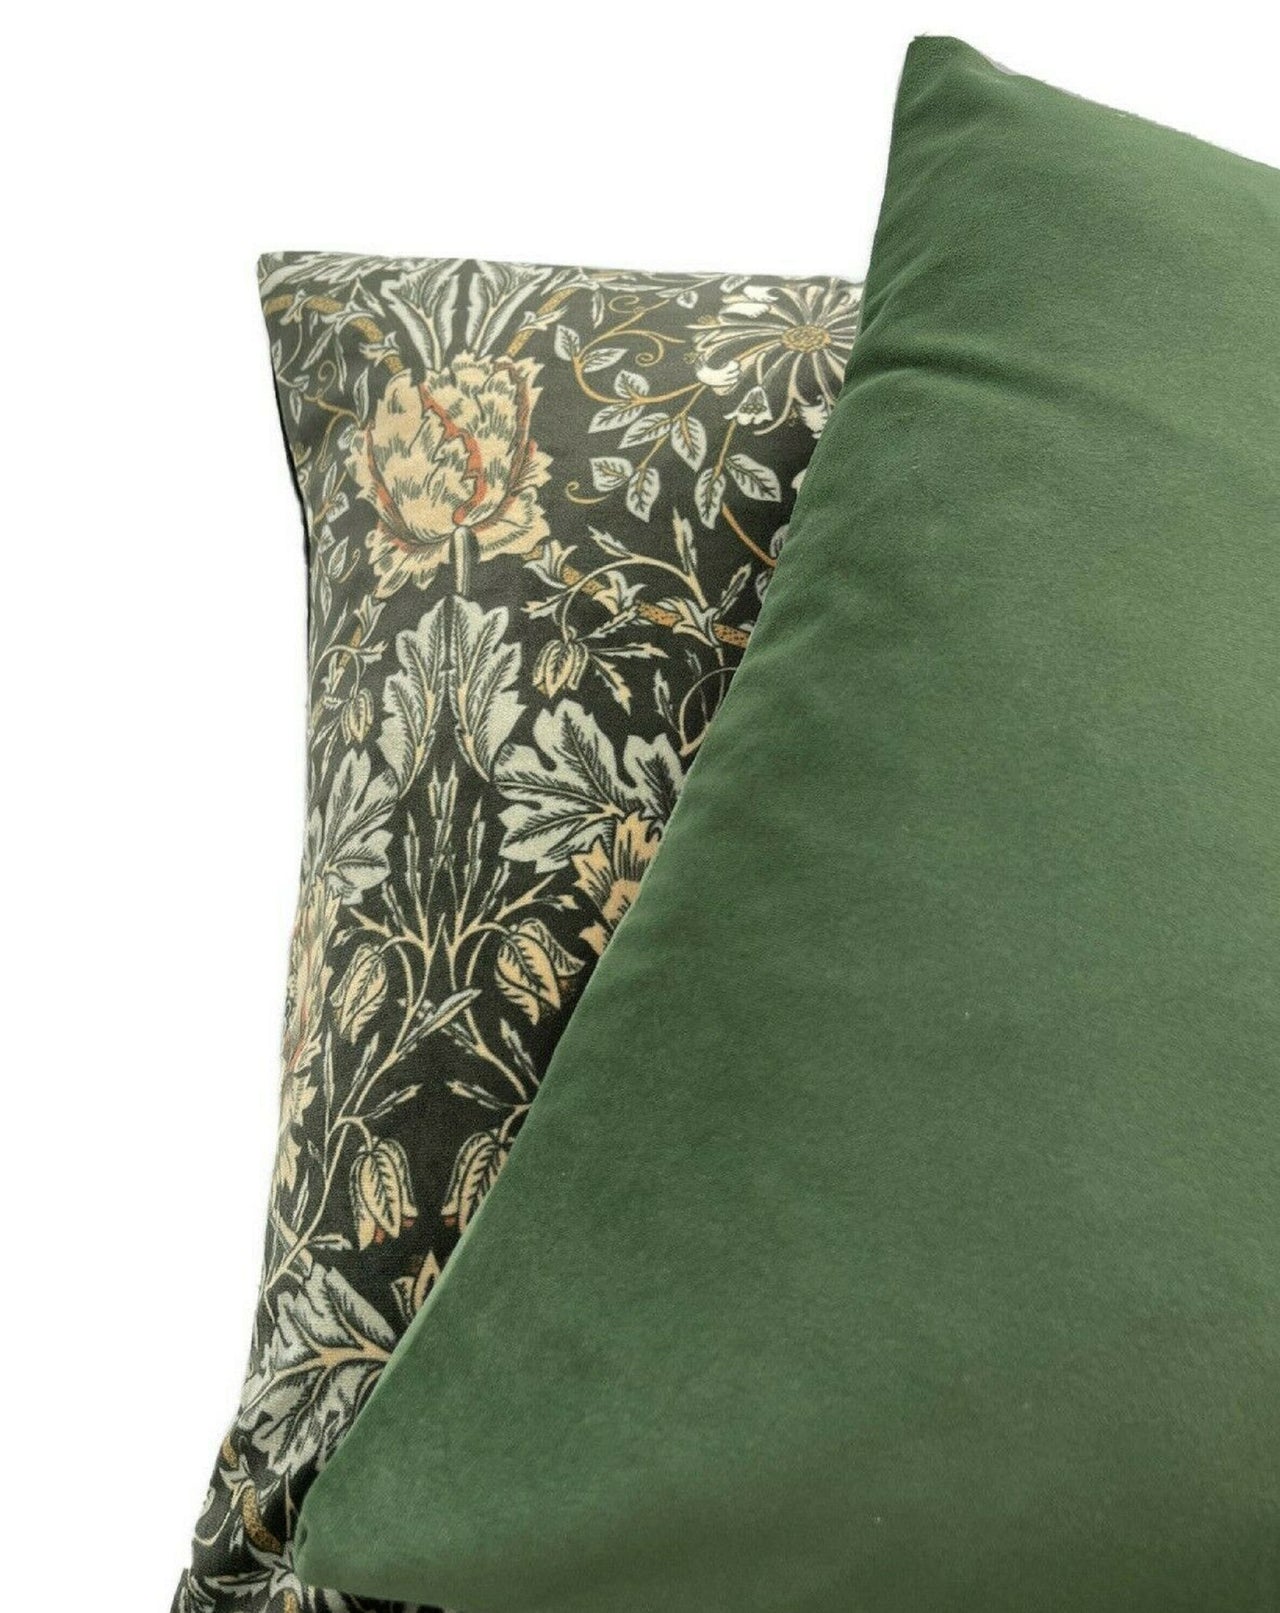 Garden Honeysuckle Cushion Cover Floral Pillow Black Blue Green Plants Velvet